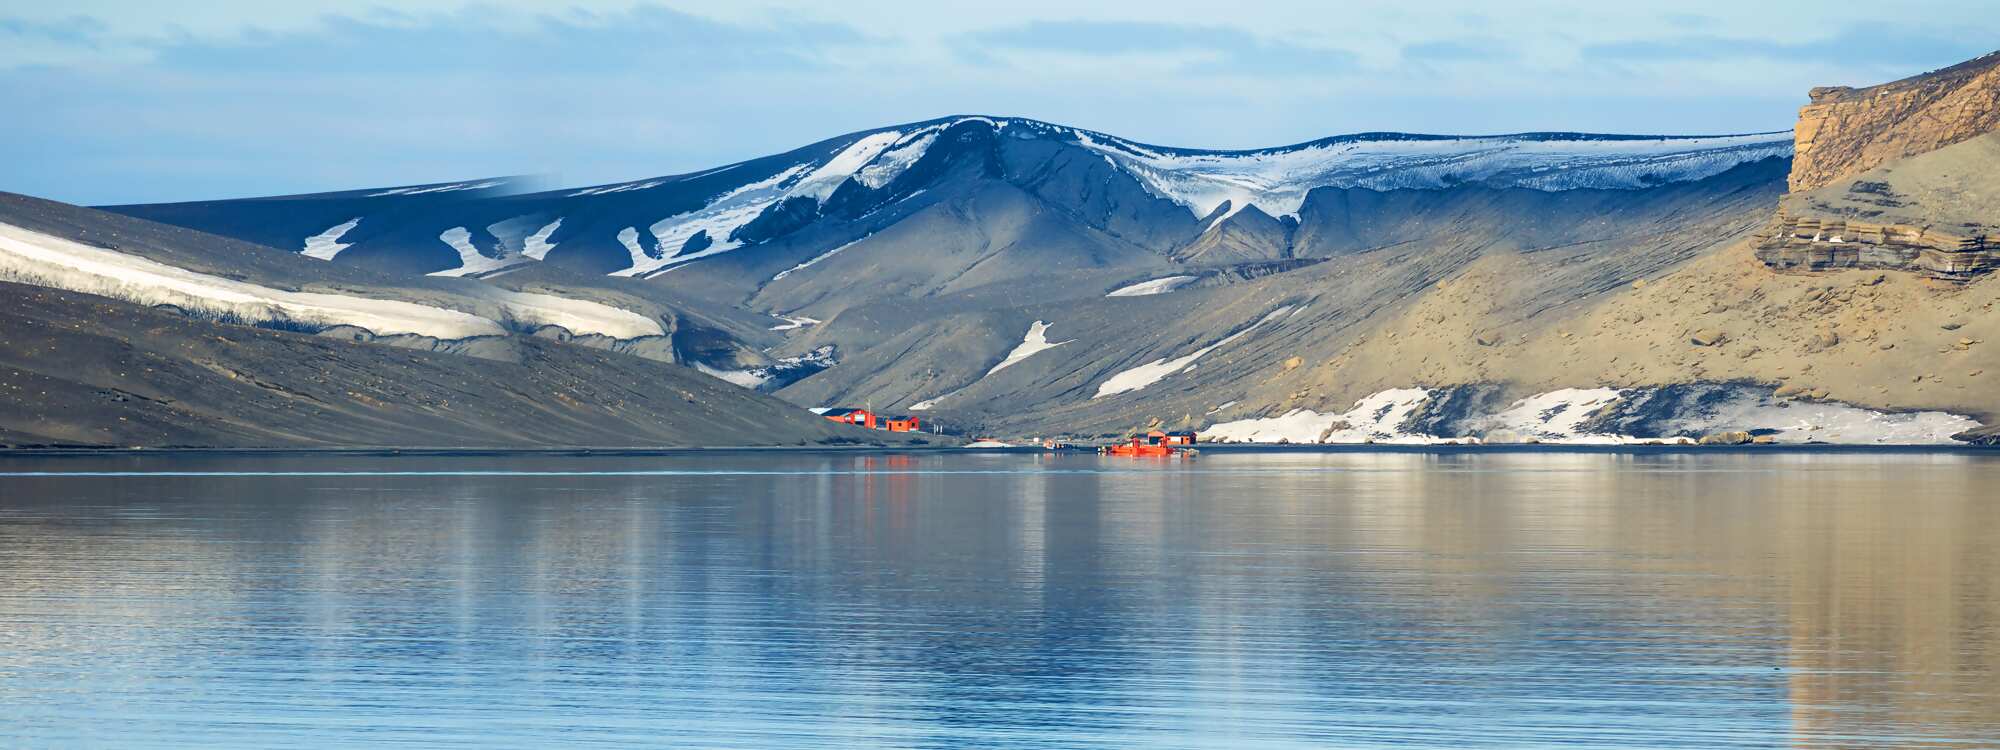 Argentinisches Basiscamp auf Deception Island - Insel der Täuschung in der Region Antarktis